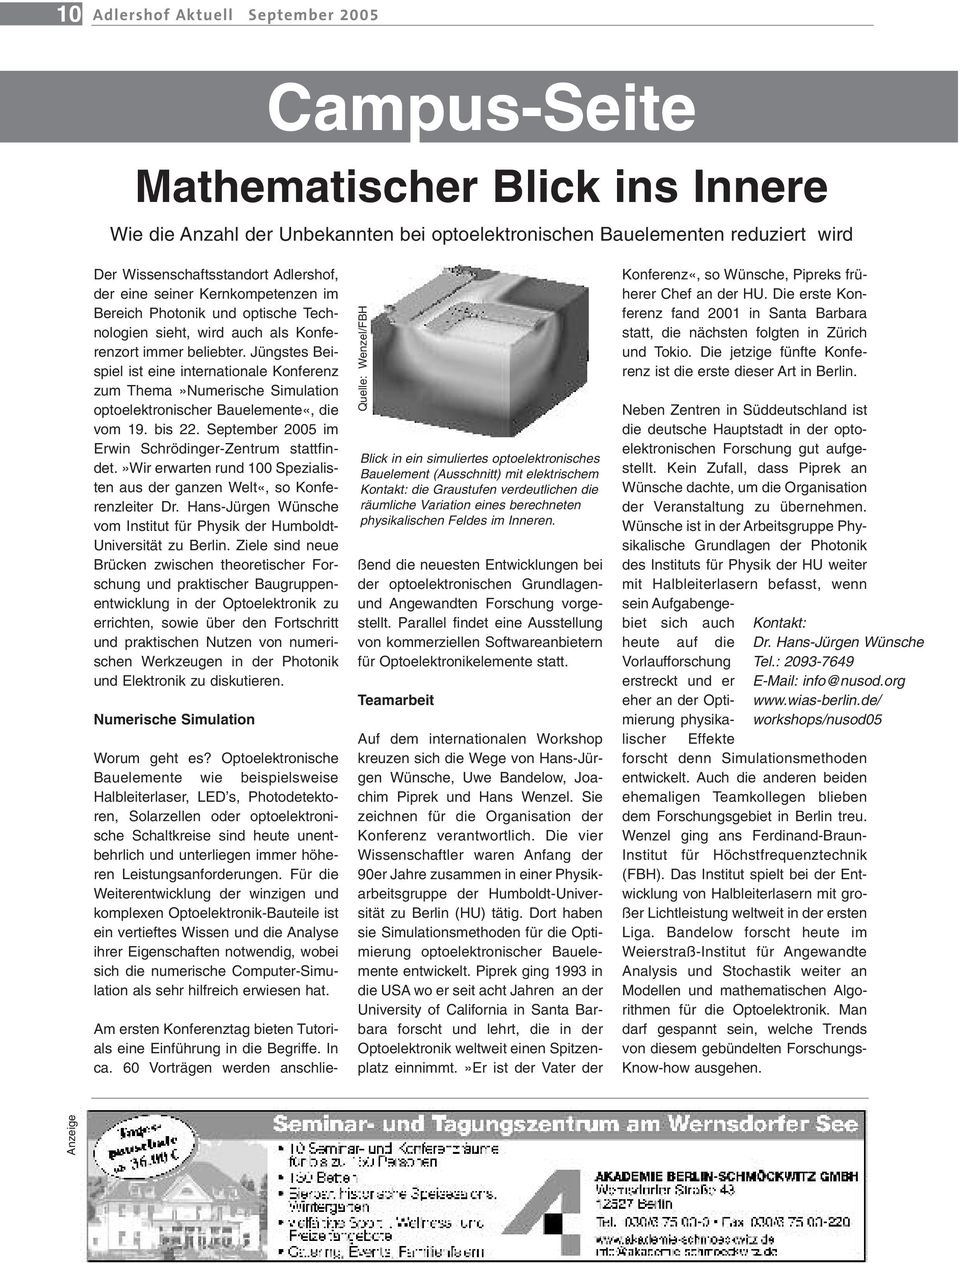 Jüngstes Beispiel ist eine internationale Konferenz zum Thema»Numerische Simulation optoelektronischer Bauelemente«, die vom 19. bis 22. September 2005 im Erwin Schrödinger-Zentrum stattfindet.